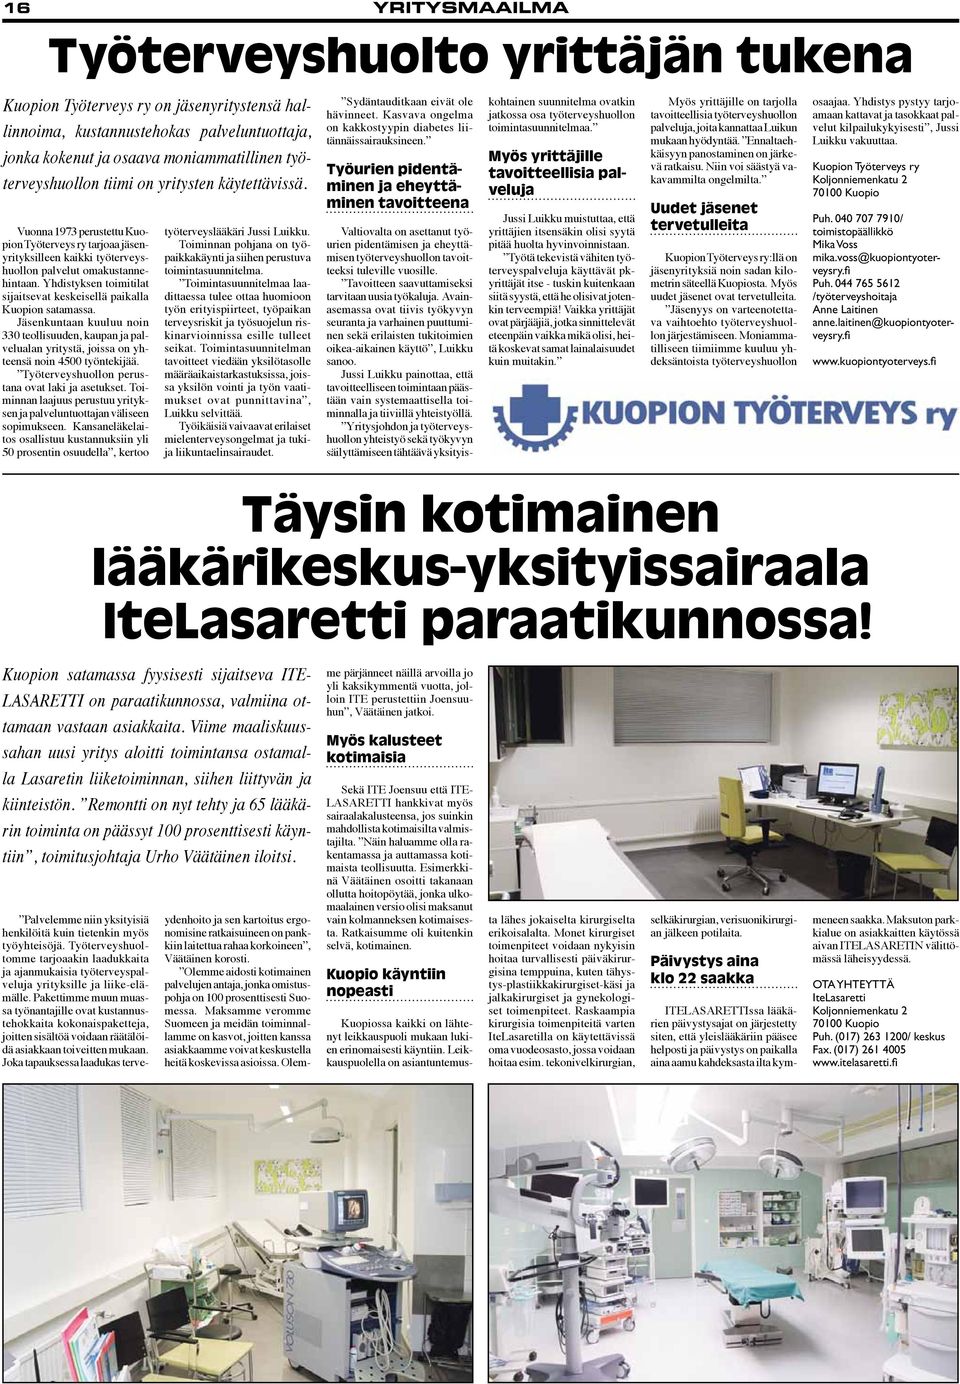 Yhdistyksen toimitilat sijaitsevat keskeisellä paikalla Kuopion satamassa. Jäsenkuntaan kuuluu noin 330 teollisuuden, kaupan ja palvelualan yritystä, joissa on yhteensä noin 4500 työntekijää.